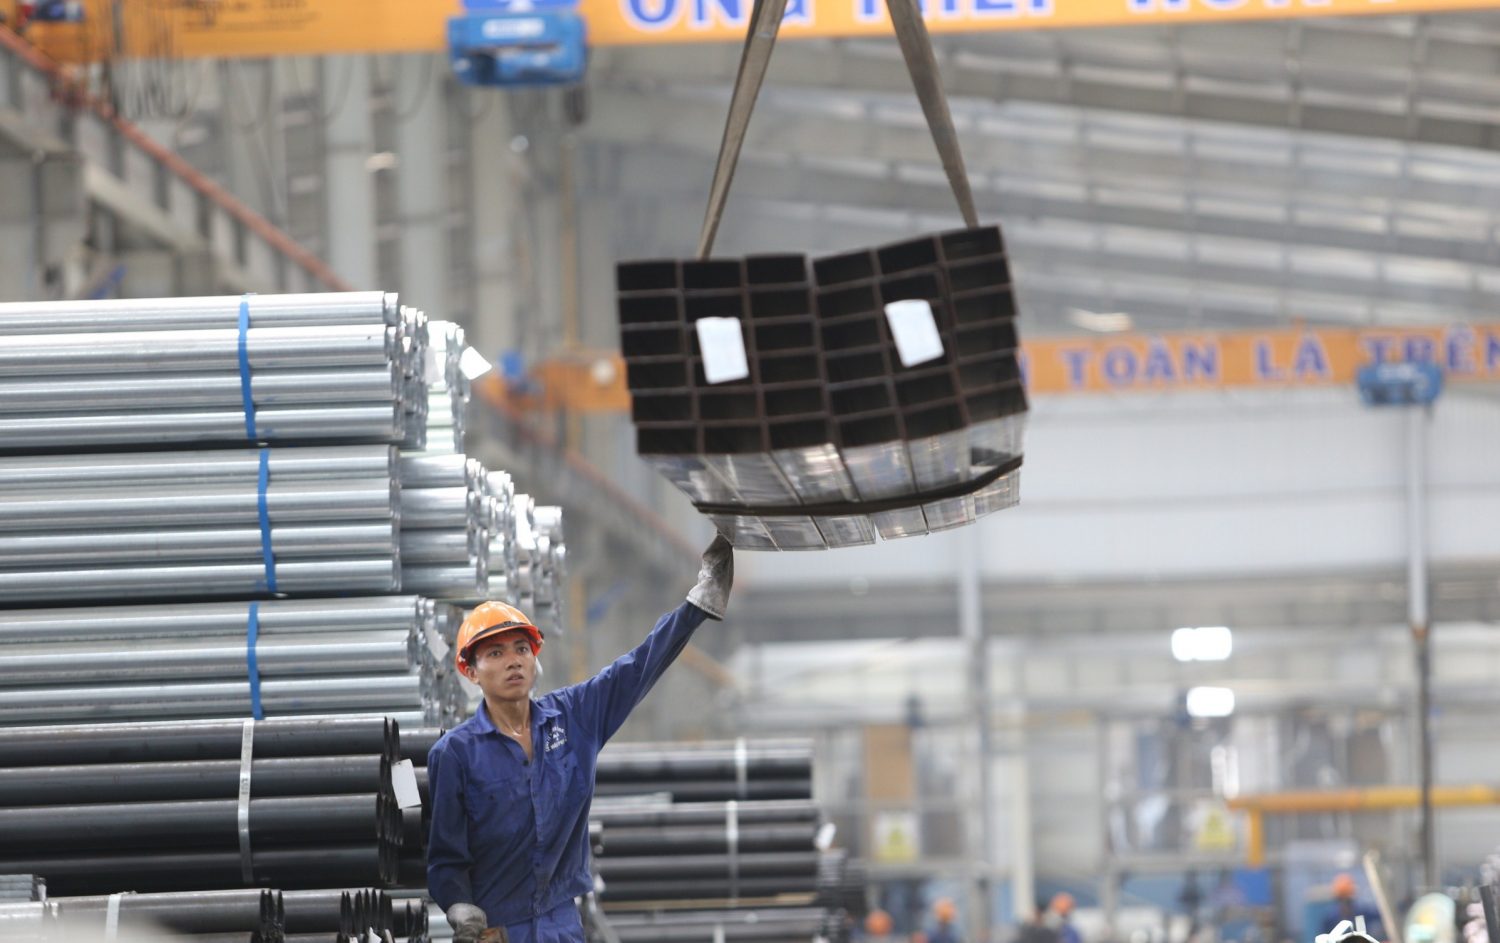 Trong tháng 5/2019, sản lượng bán hàng của Ống thép Hòa Phát đạt trên 65.000 tấn, tăng gần 10% so với tháng 4